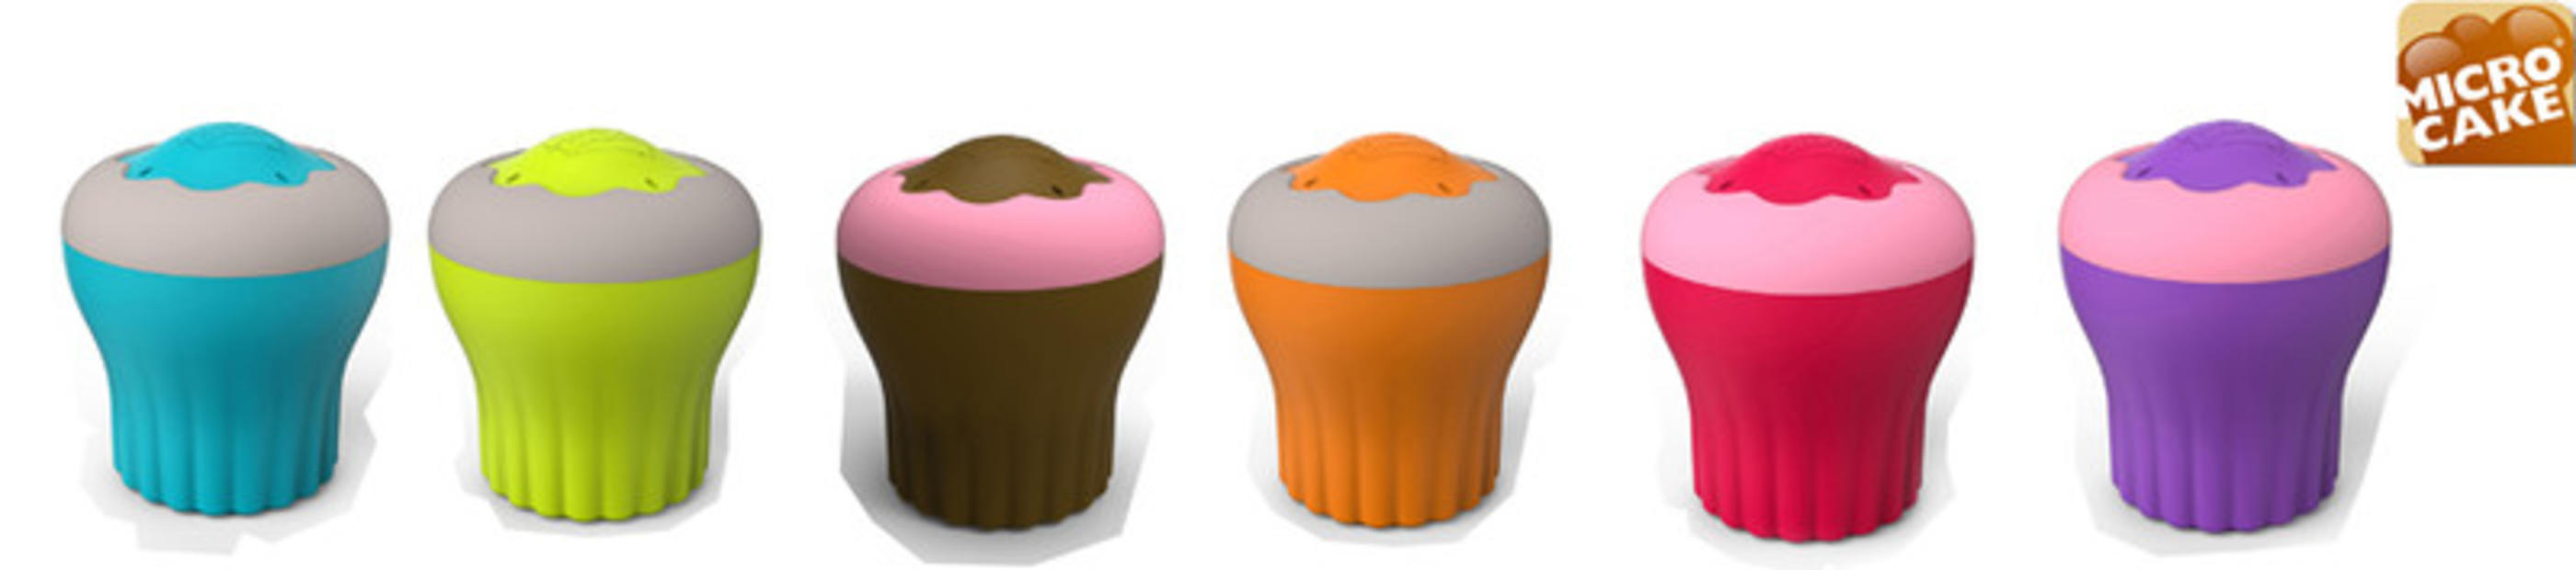 Microcake ® : La nouveauté gourmande par Jean Dubost !